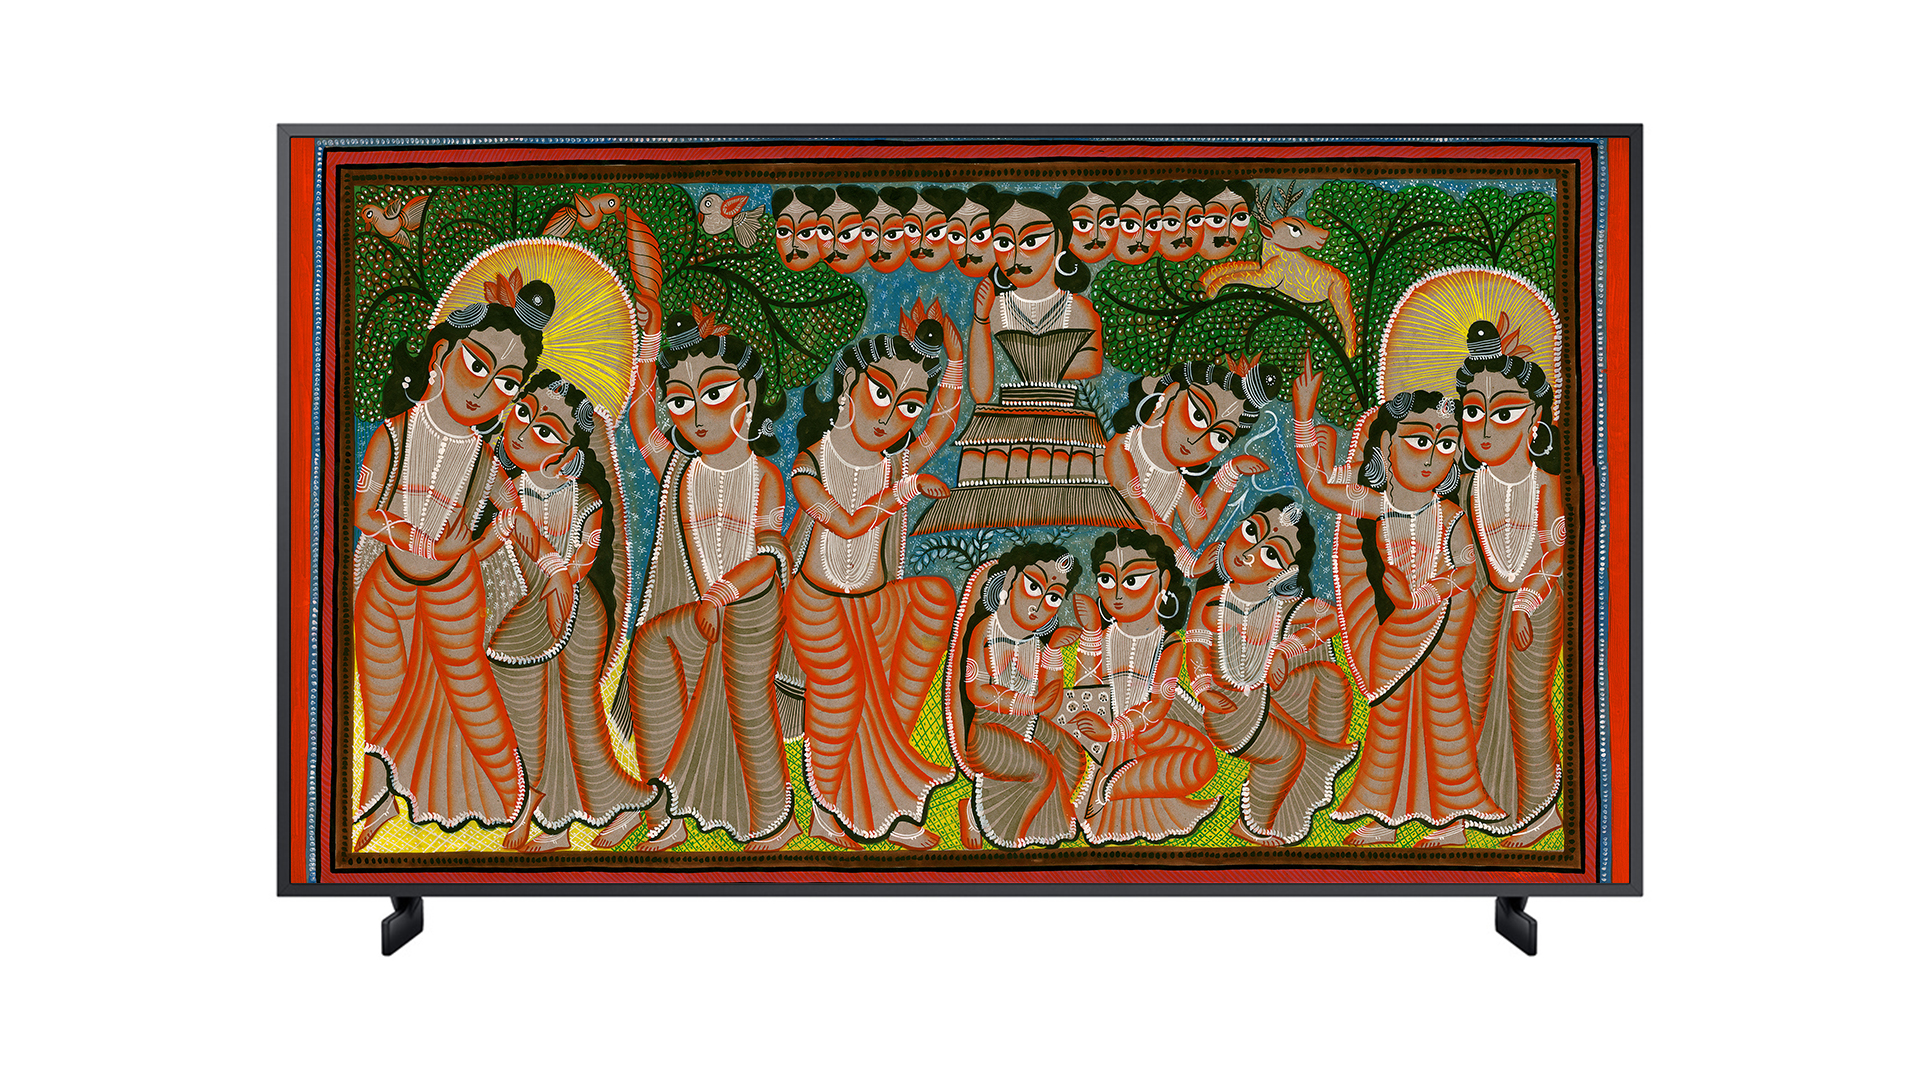 Kalighat Painting by Shanuyar Chitrakar